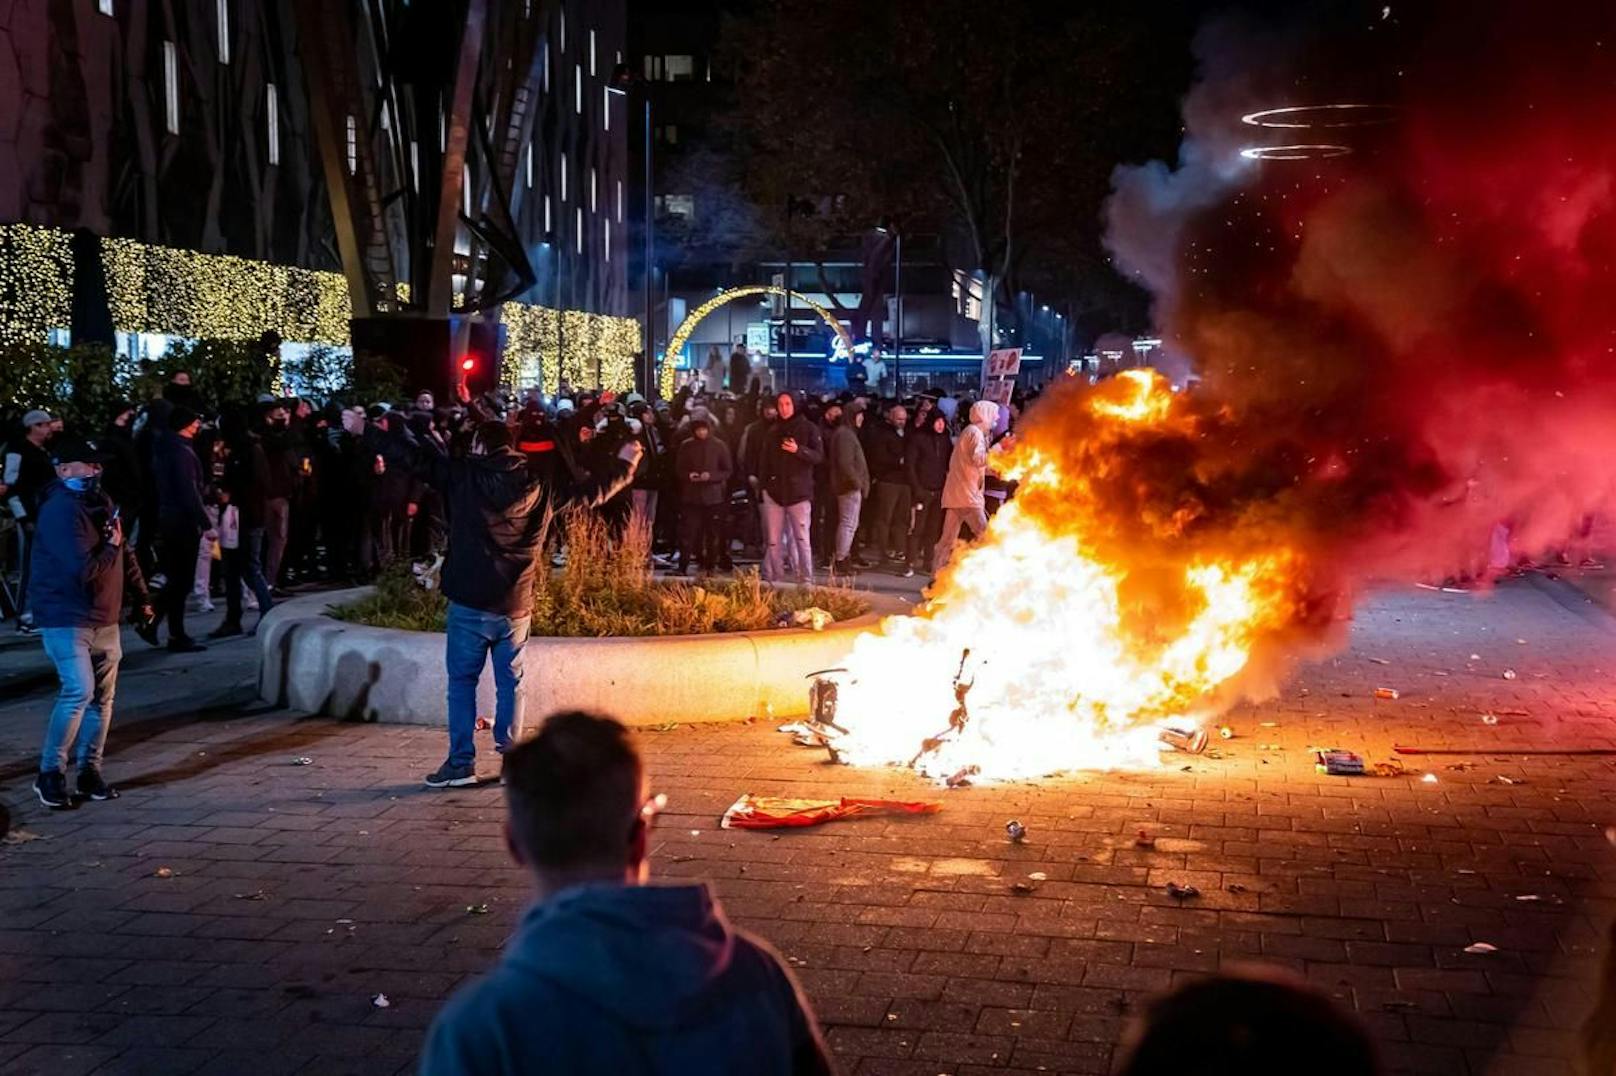 Freitagabend: Demonstrierende stecken Autos in Brand. Der Protest in Rotterdam eskaliert.